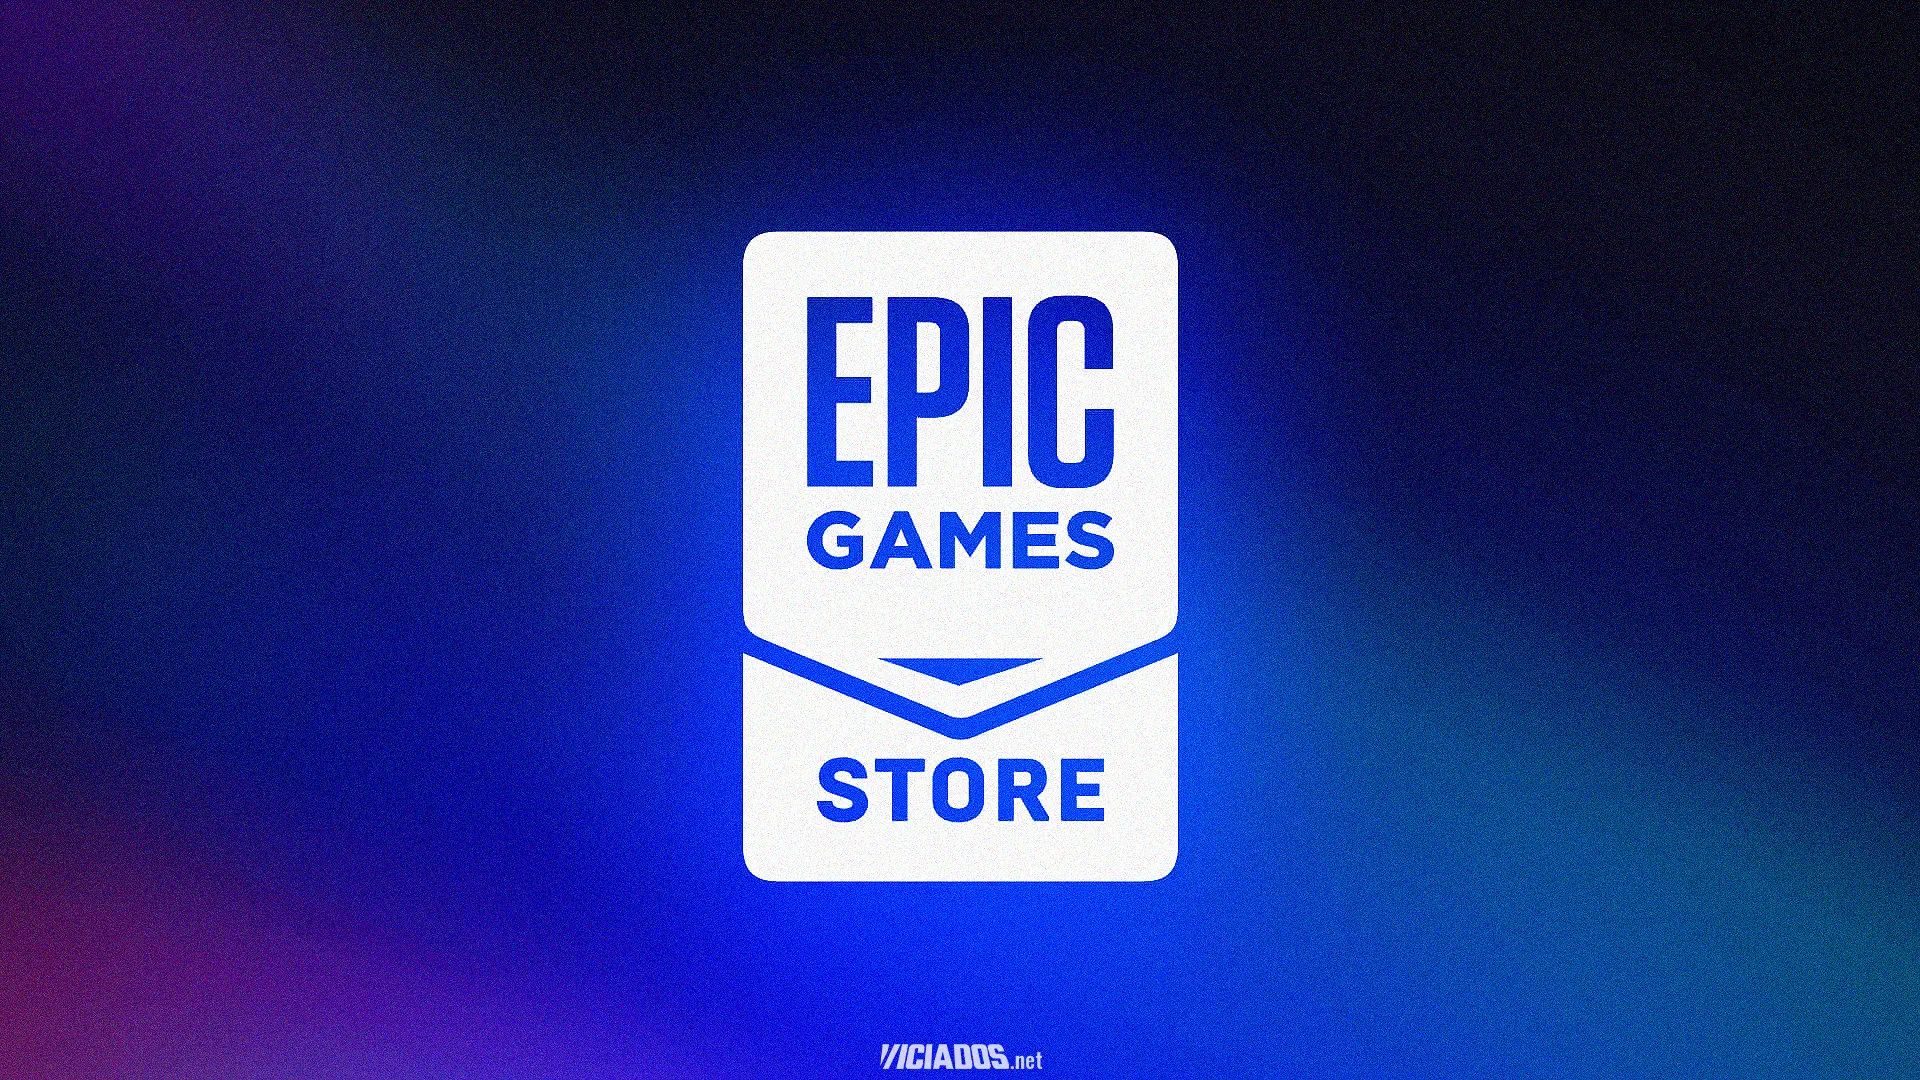 Epic Games | Novos jogos grátis estão disponíveis; Saiba quais são e como resgatar! 2023 Viciados